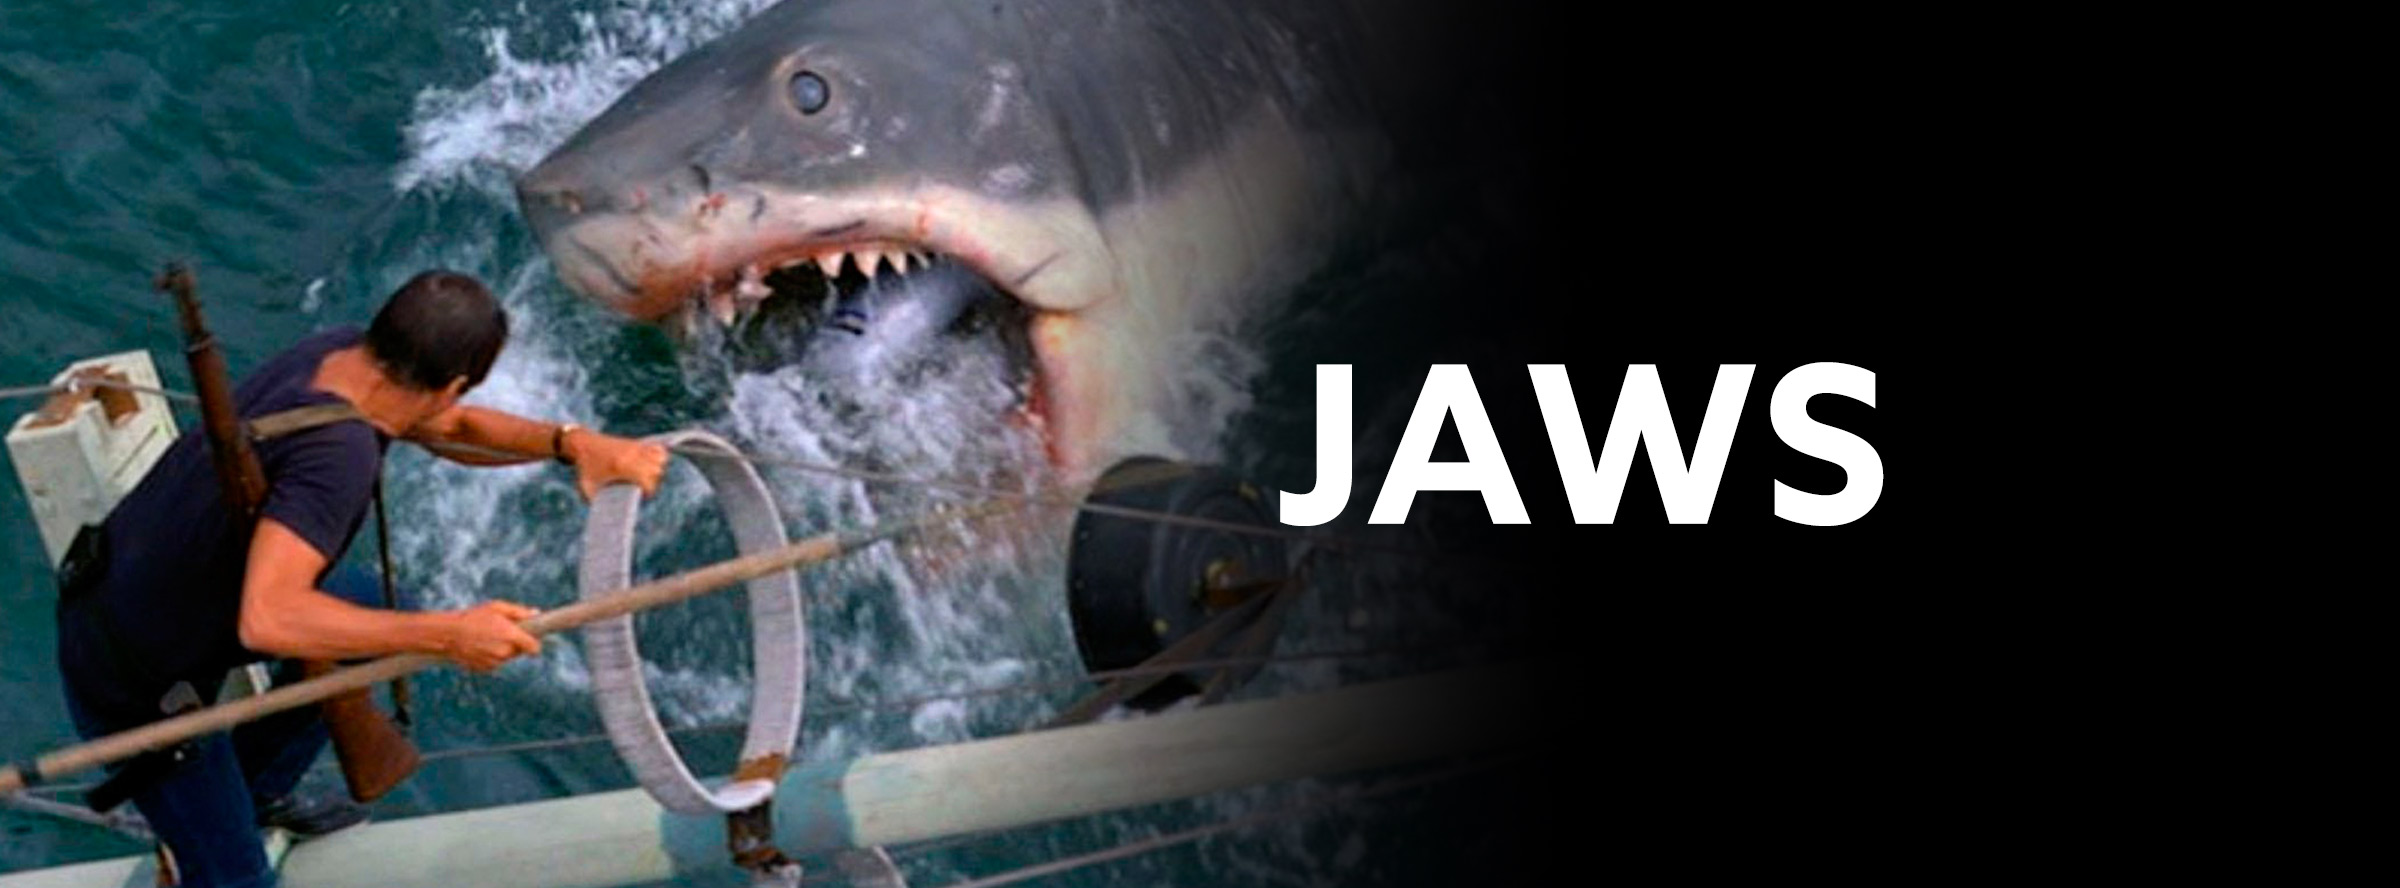 Slider Image for Jaws 3D